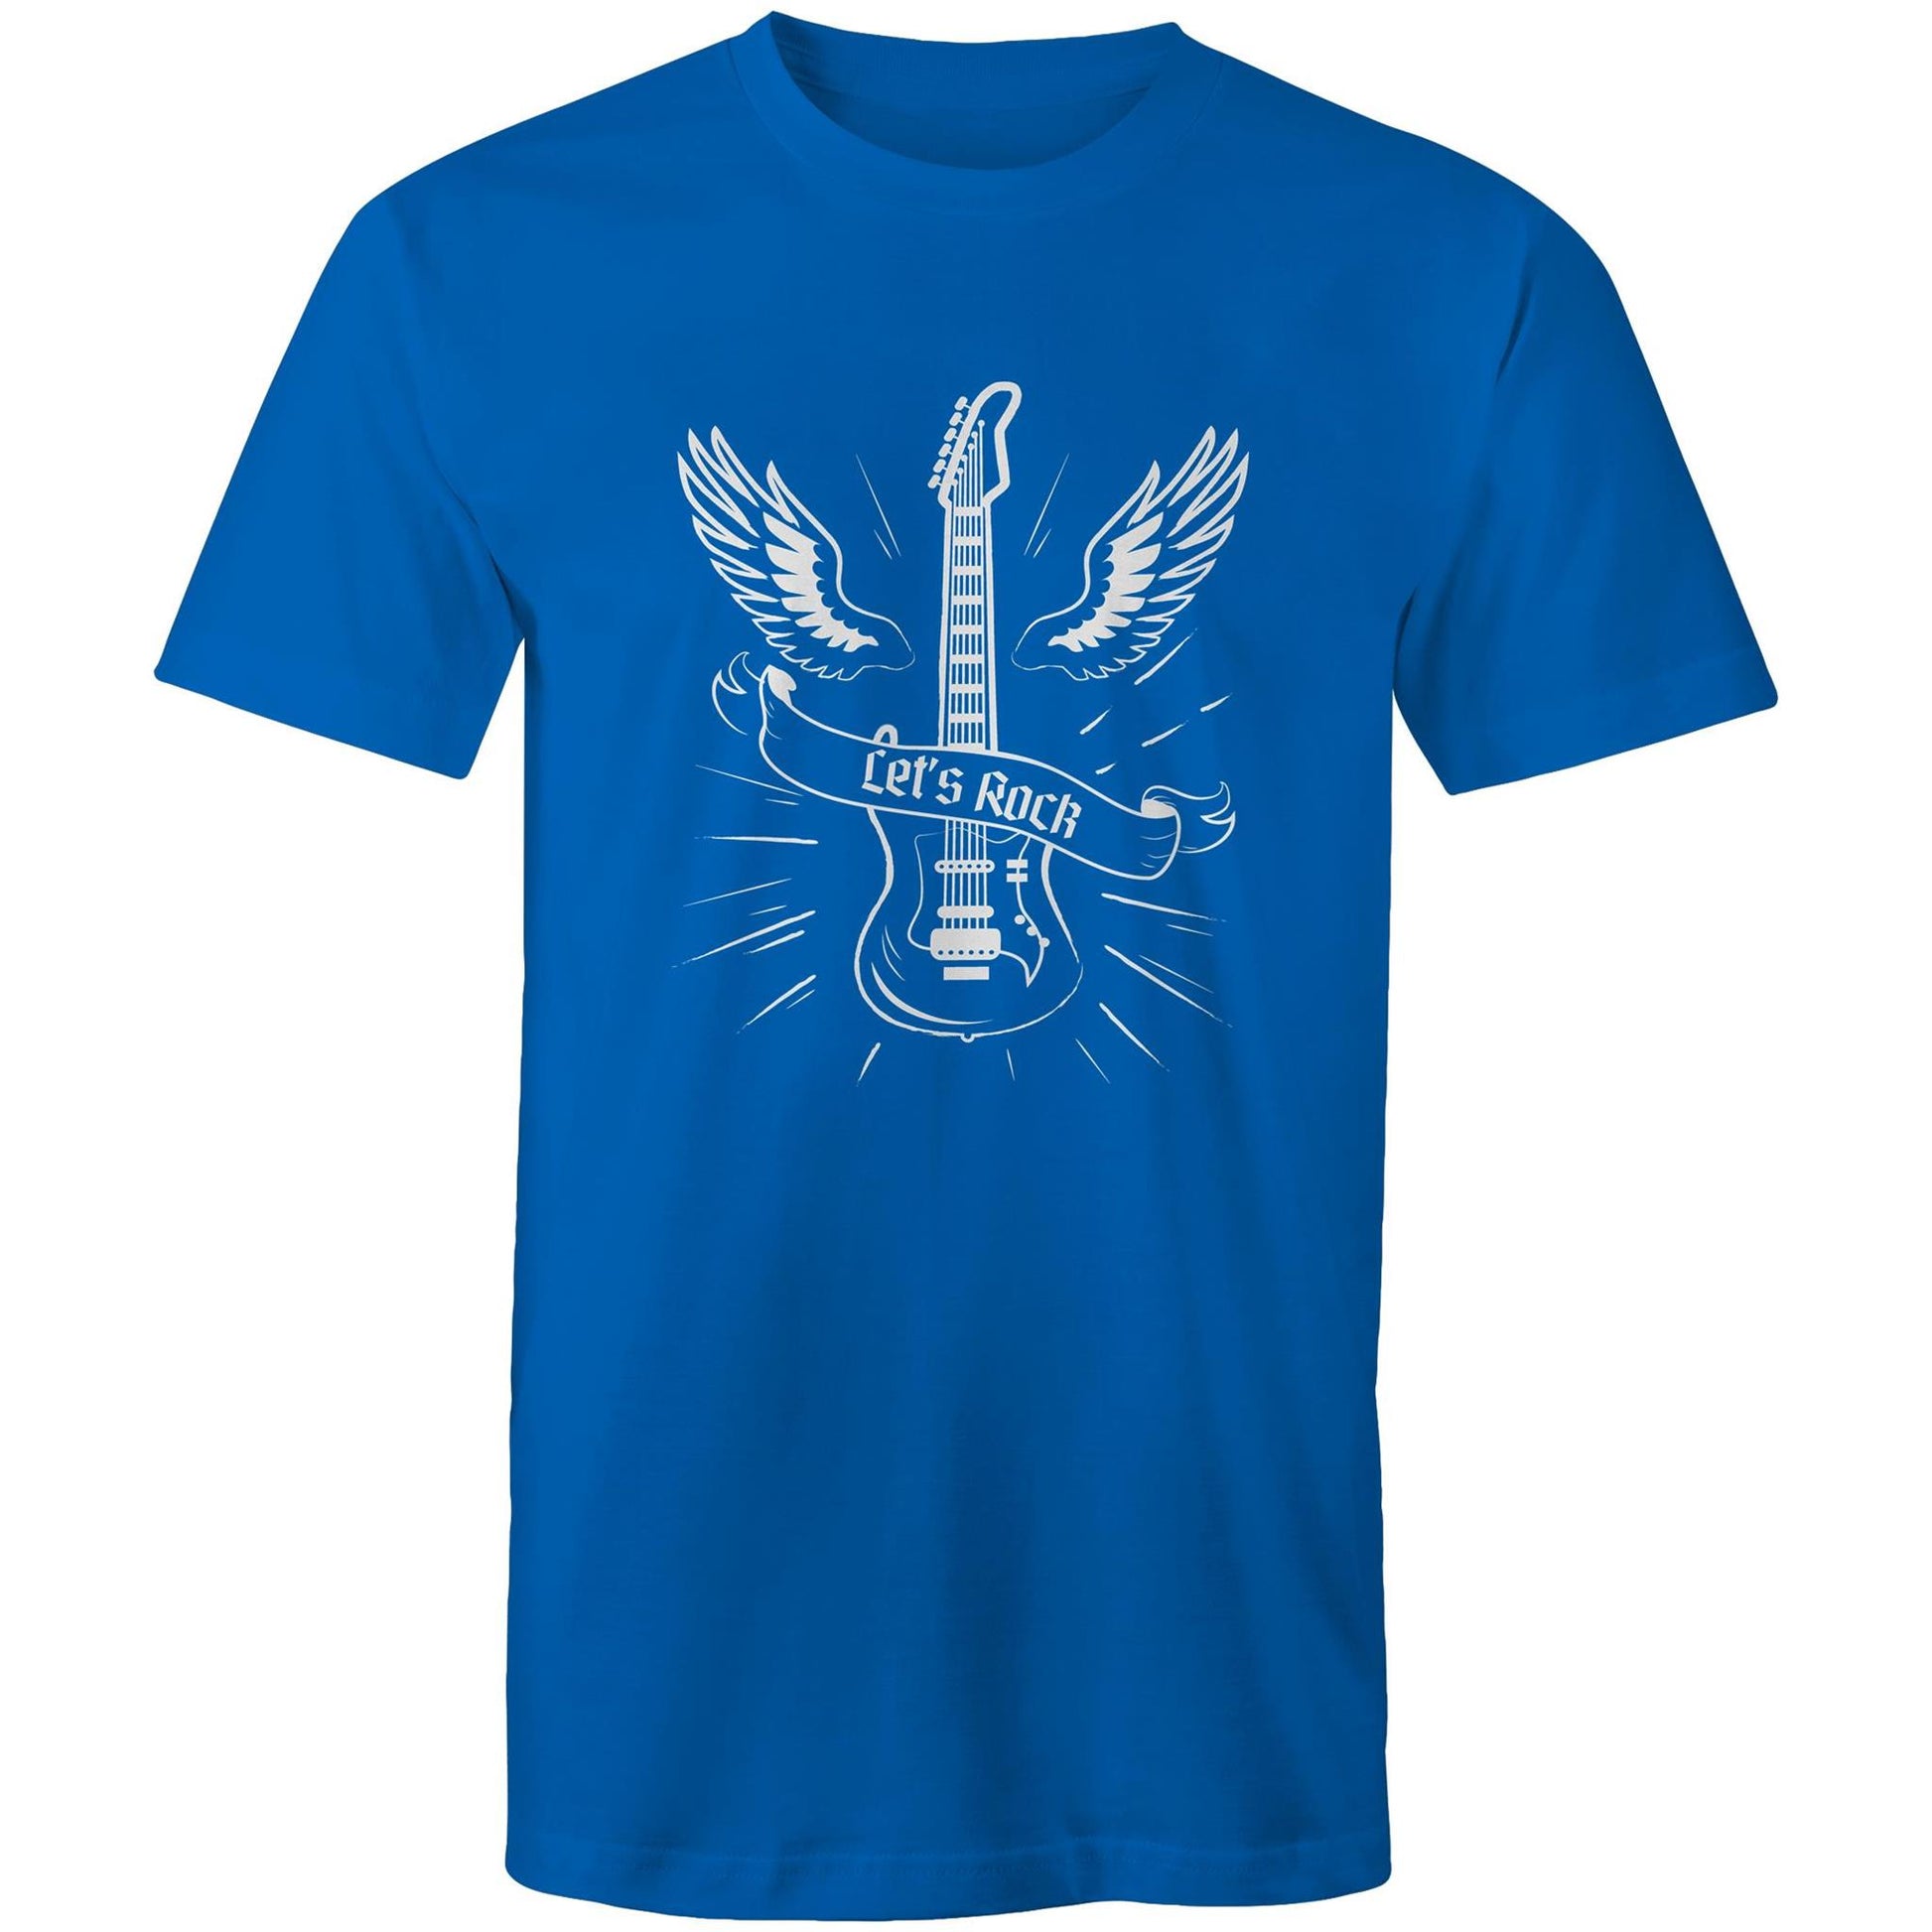 Let's Rock - Mens T-Shirt Bright Royal Mens T-shirt Music